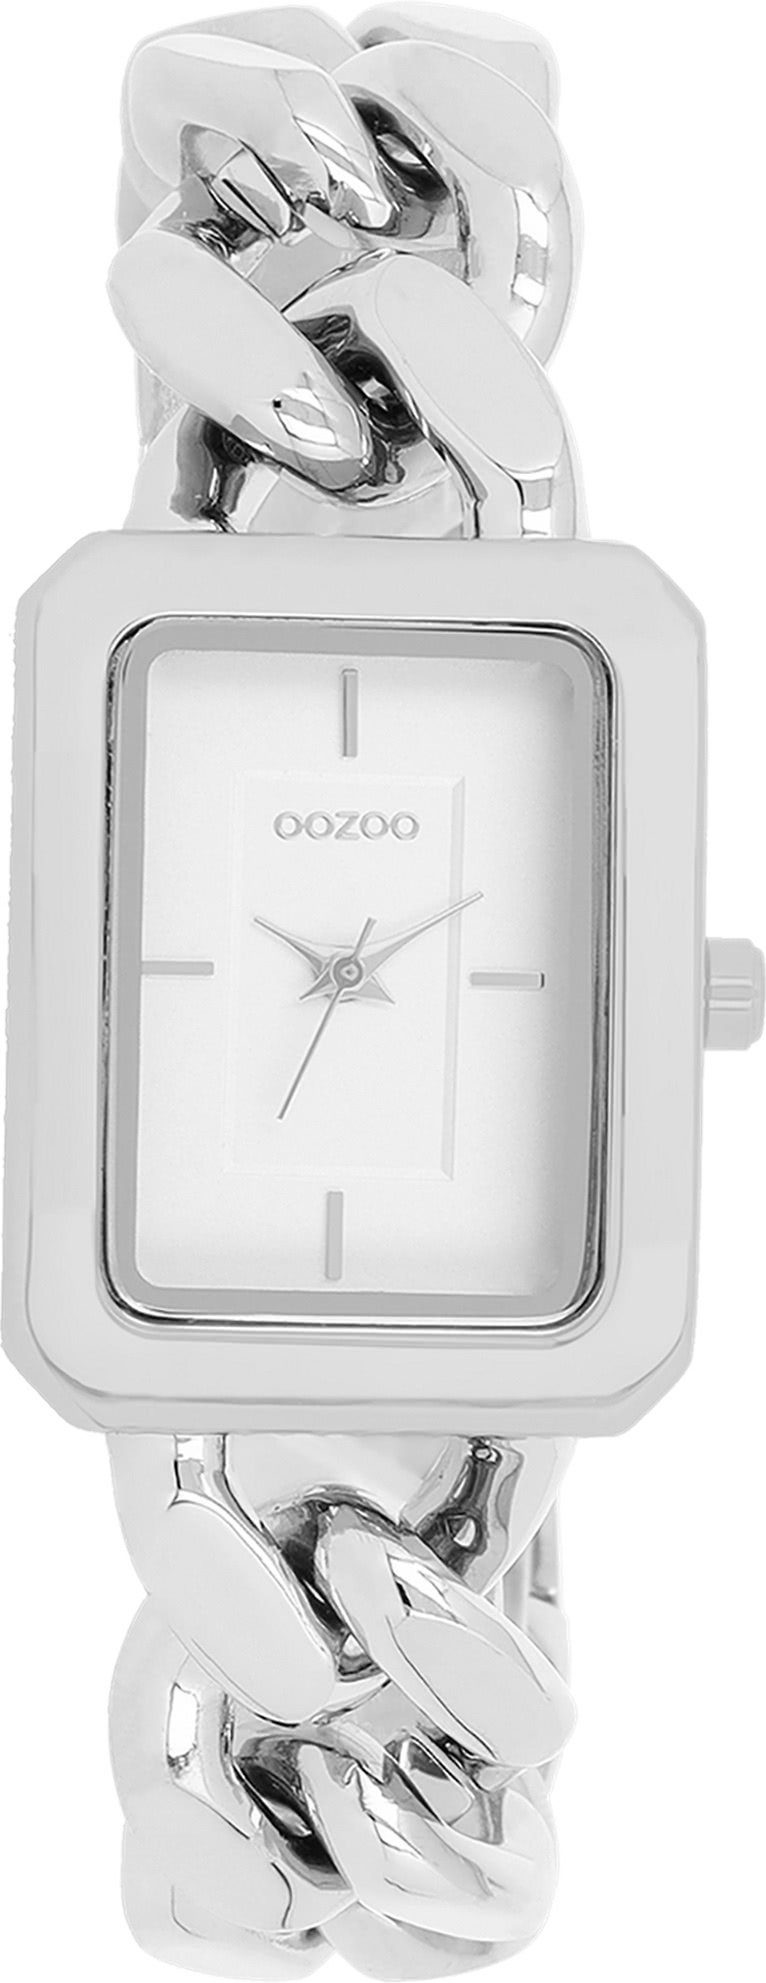 rechteckig, Oozoo Timepieces groß (ca. Fashion-Style, Damenuhr Schiebeverschluss OOZOO Metallarmband, Armbanduhr 31x24mm) Analog, stufenlos verstellbarer Quarzuhr Damen